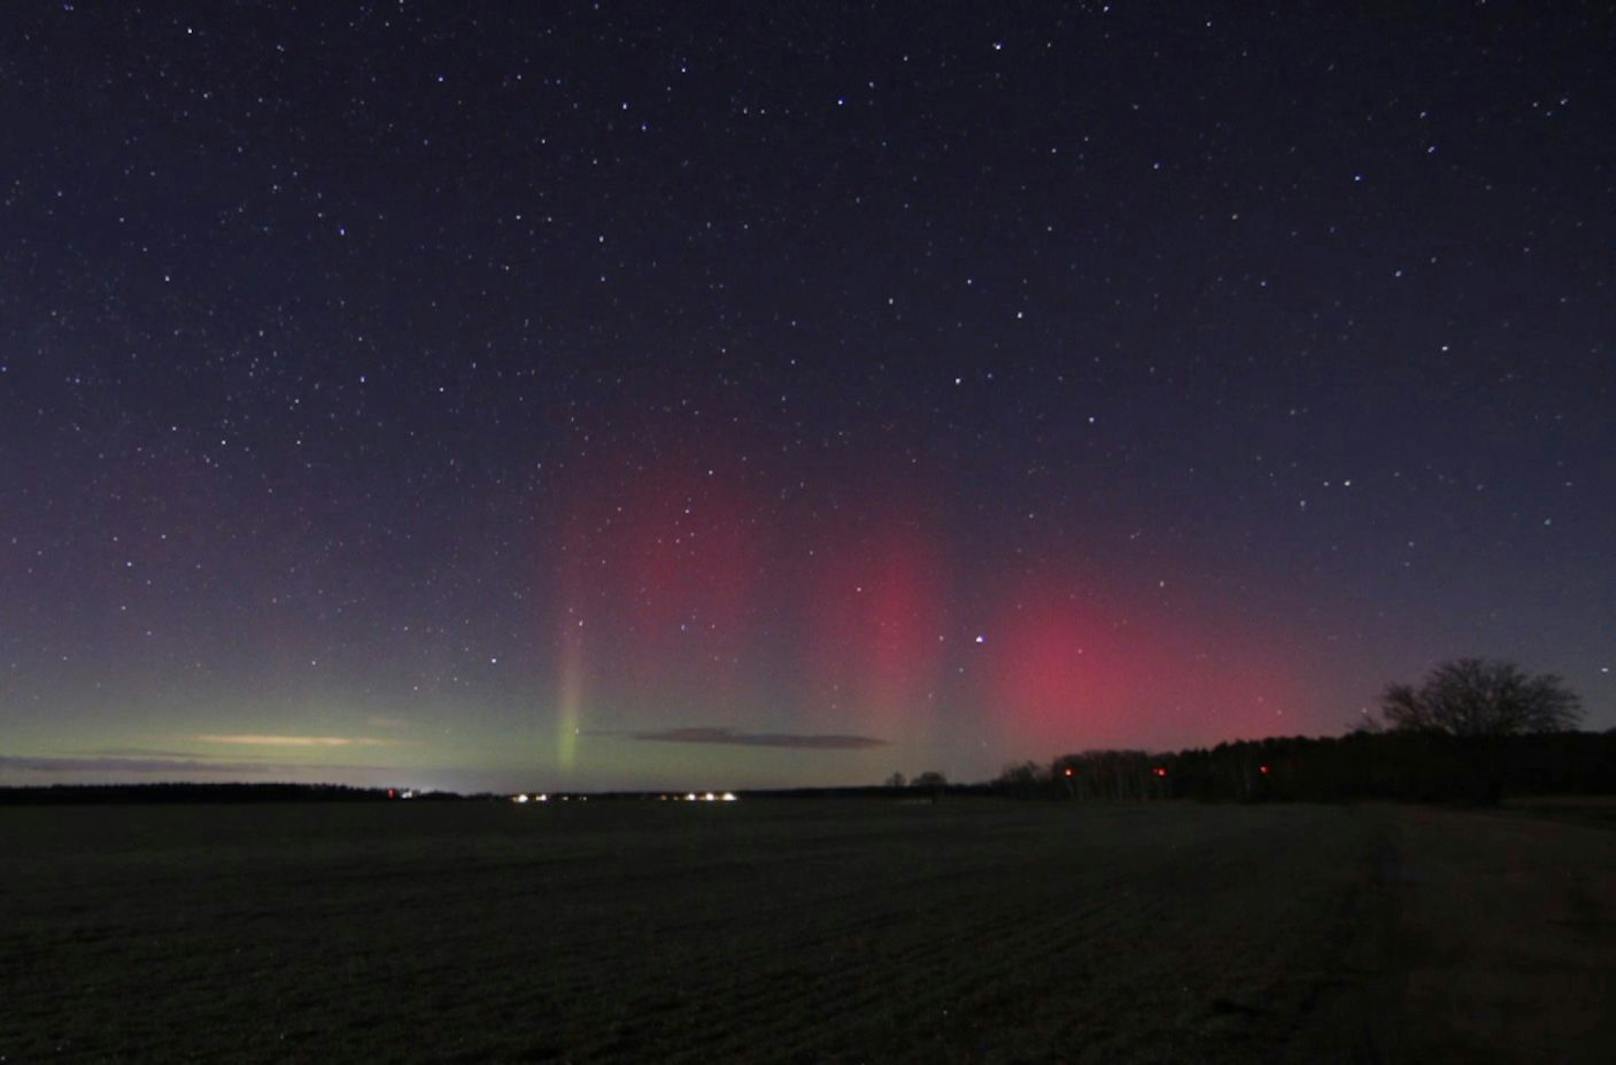 Seltene rote Polarlichter tanzten plötzlich über den Himmel Norddeutschlands. Die beiden Bilder stammen aus der Gegend um Rathenow etwa 80 km westlich von Berlin.